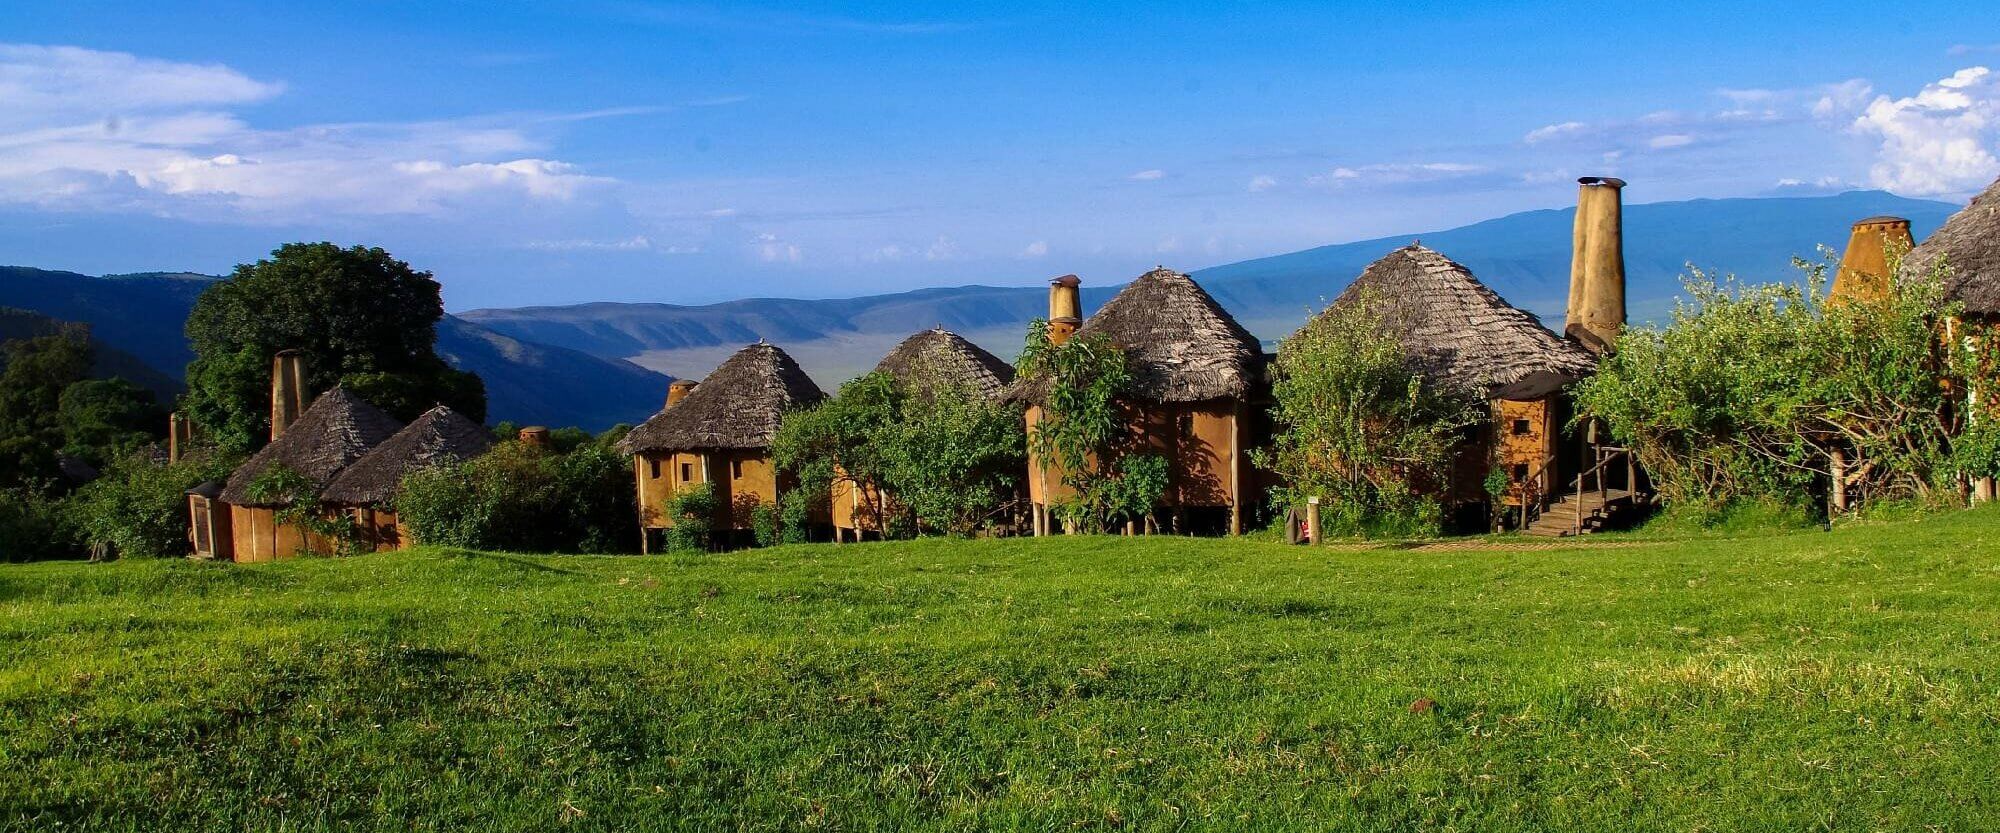 Andbeyond ngorongoro crater lodge - accommodation in ngorongoro - easy travel tanzania